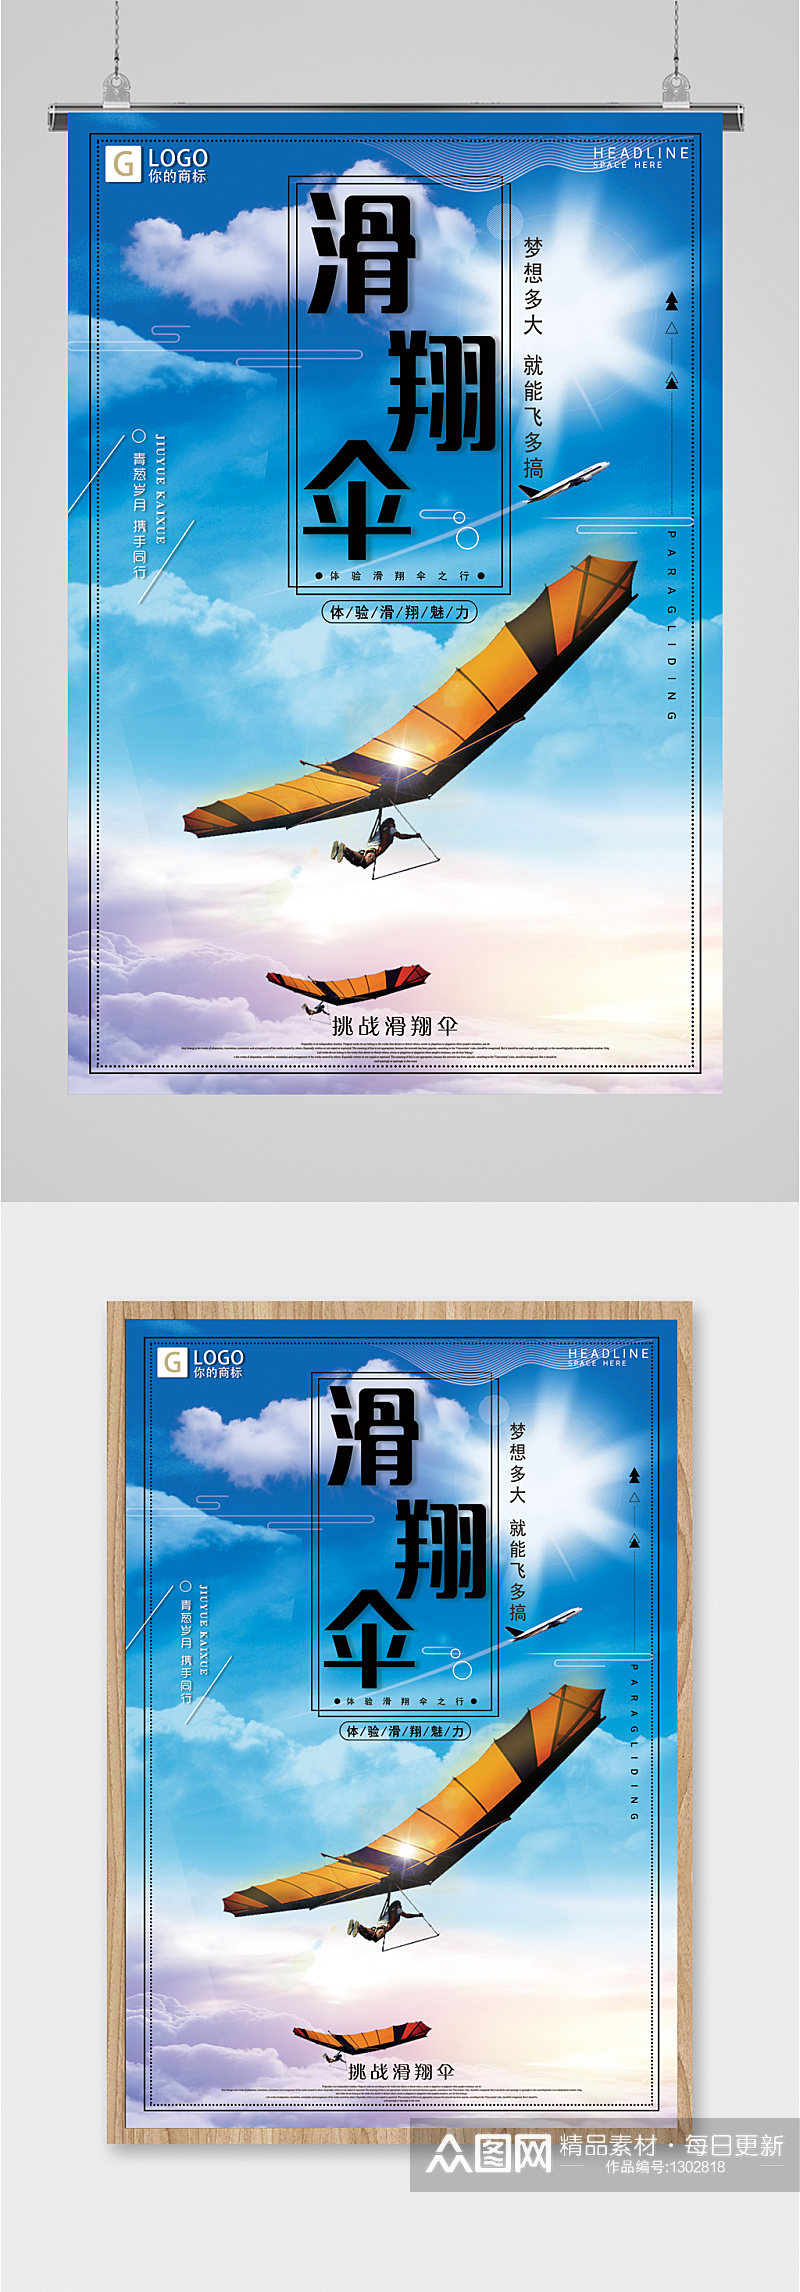 滑翔伞极限运动海报素材